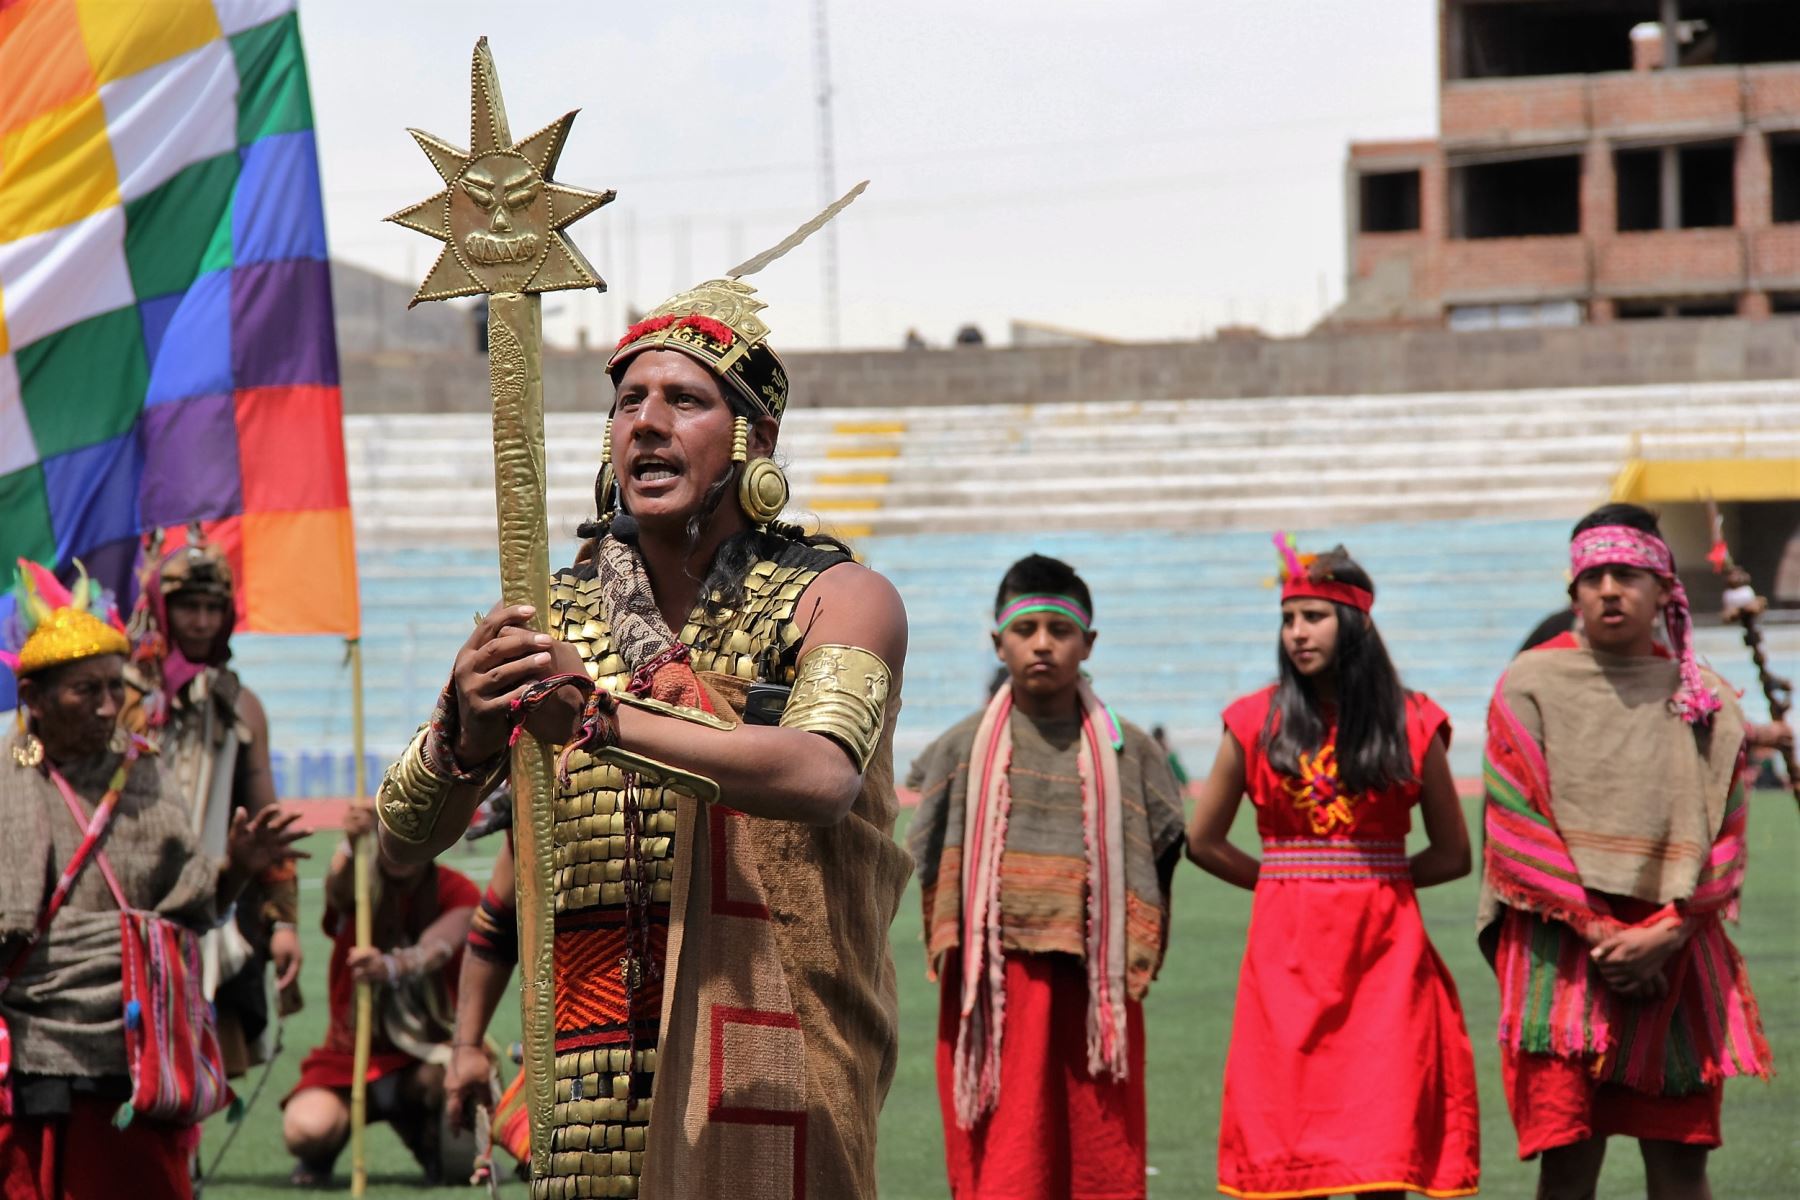 Más de 800 actores escenificarán la leyenda de Manco Cápac y Mama Ocllo en Puno. ANDINA